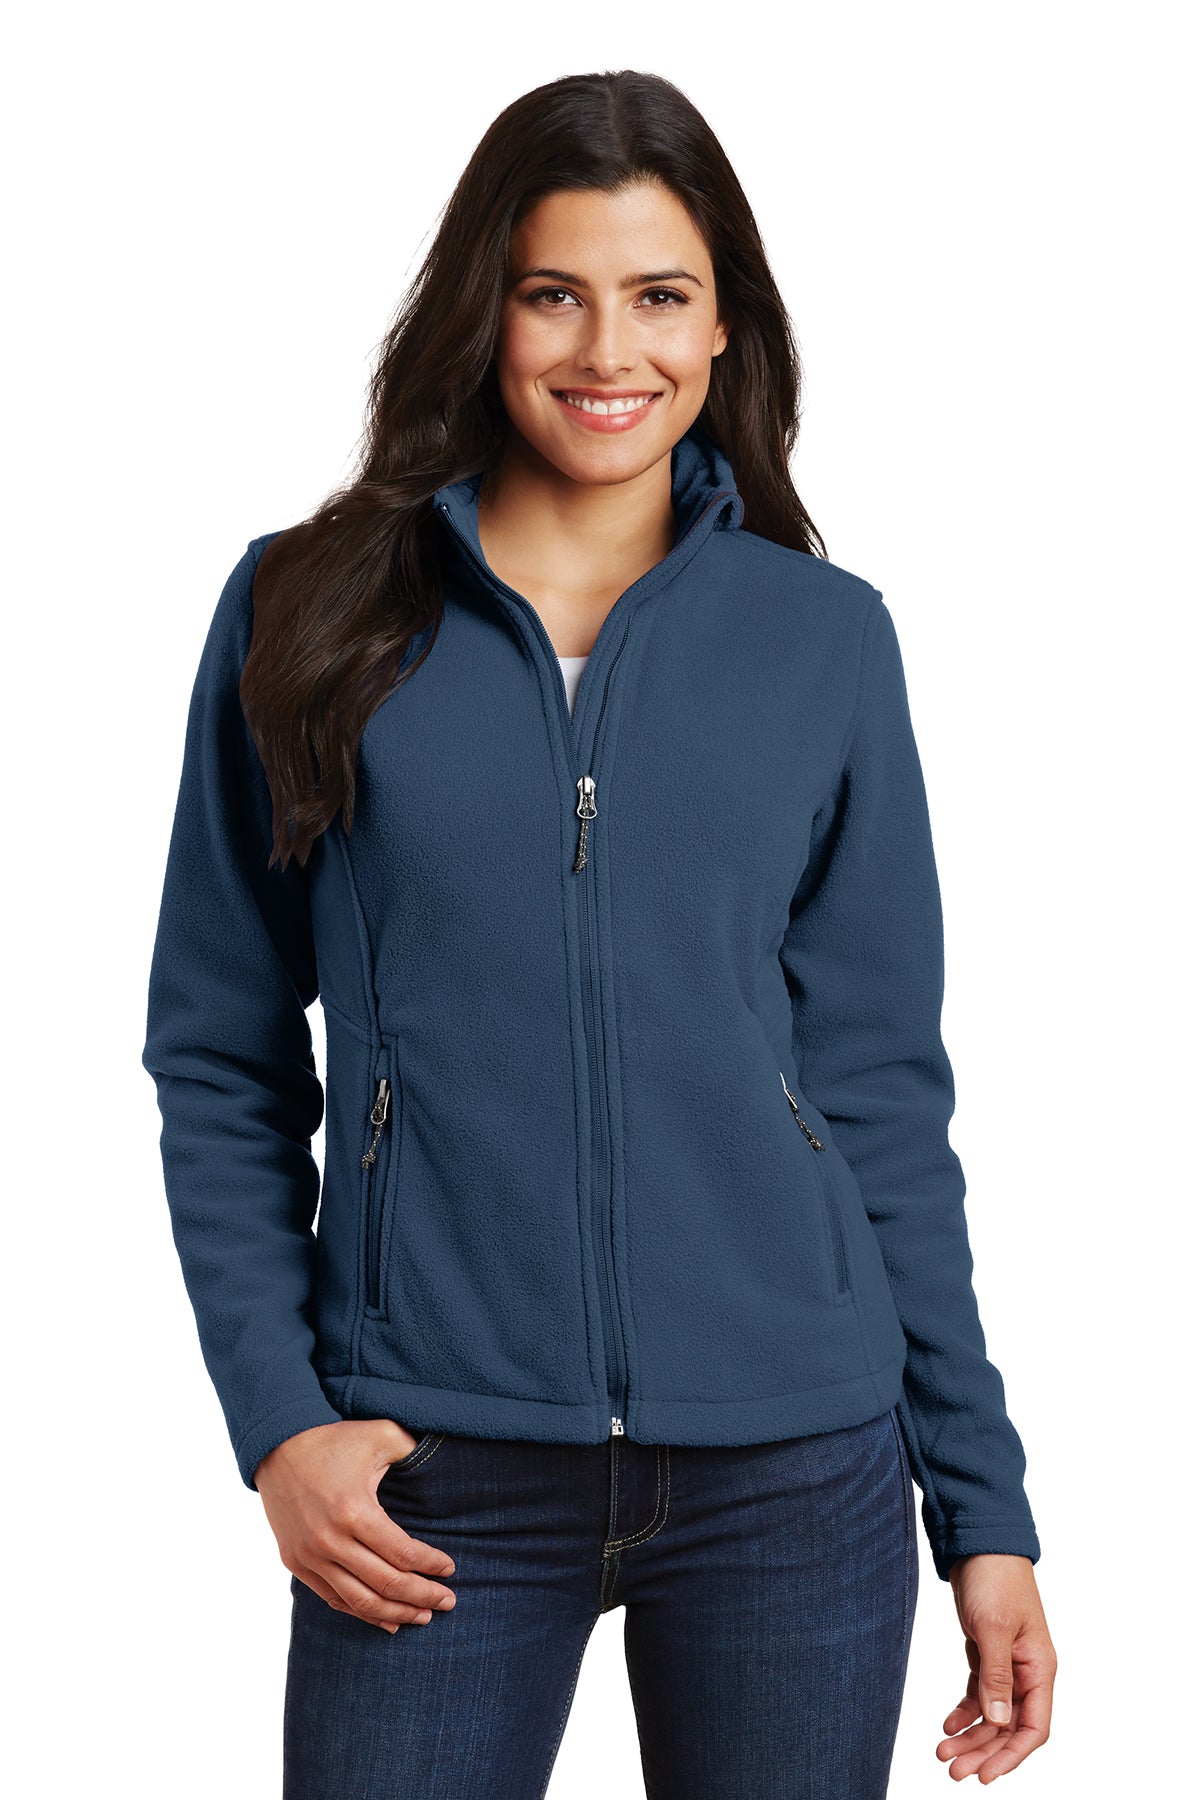 L217 Women's Fleece Jacket Insignia Blue